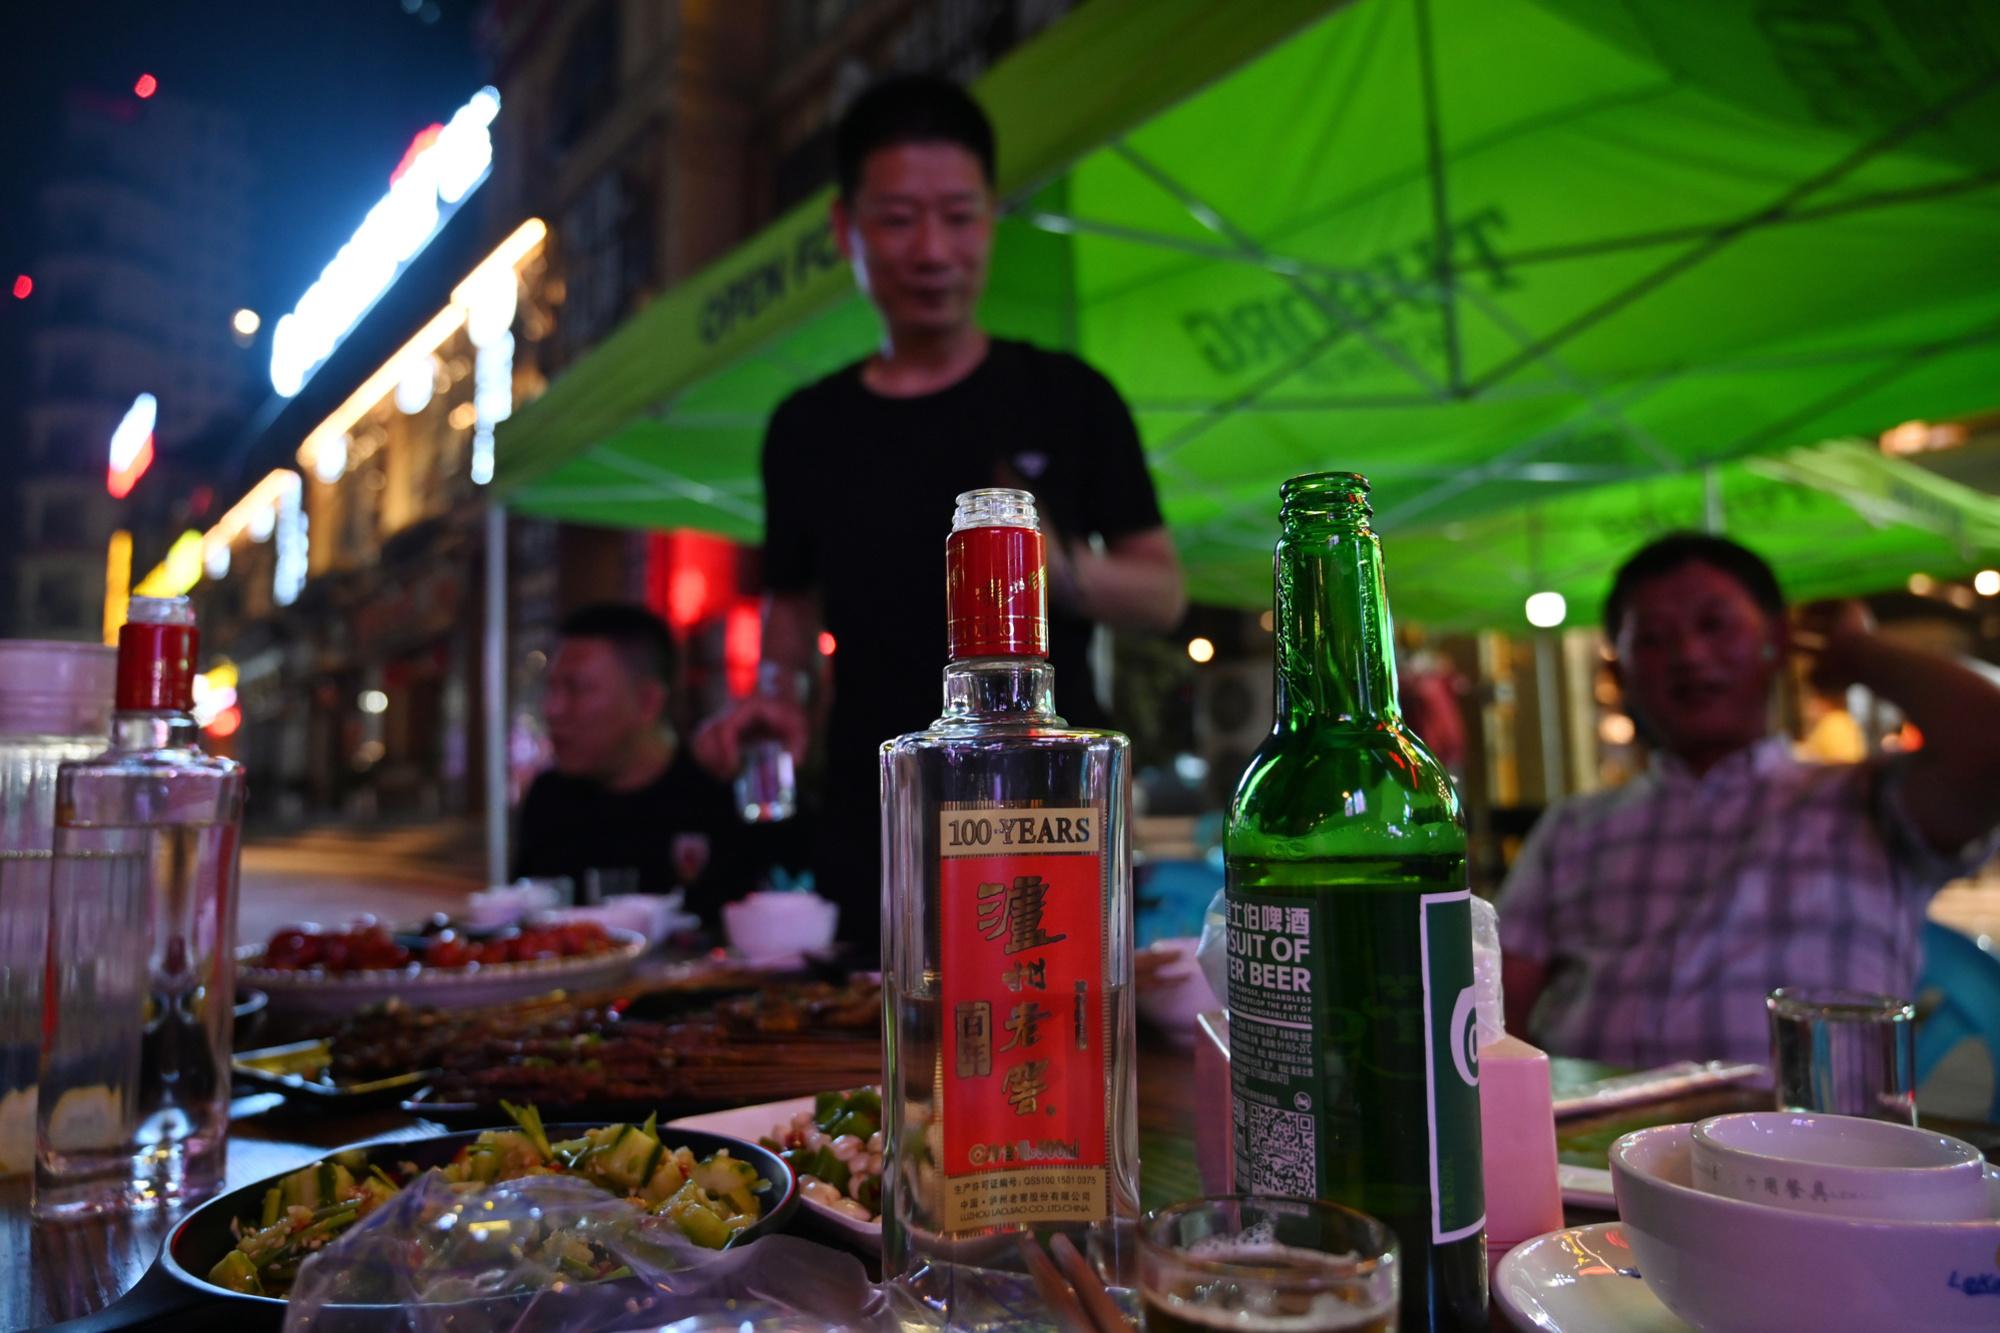 Le baijiu, un alcool chinois qui souhaite s'exporter, malgré son goût de 